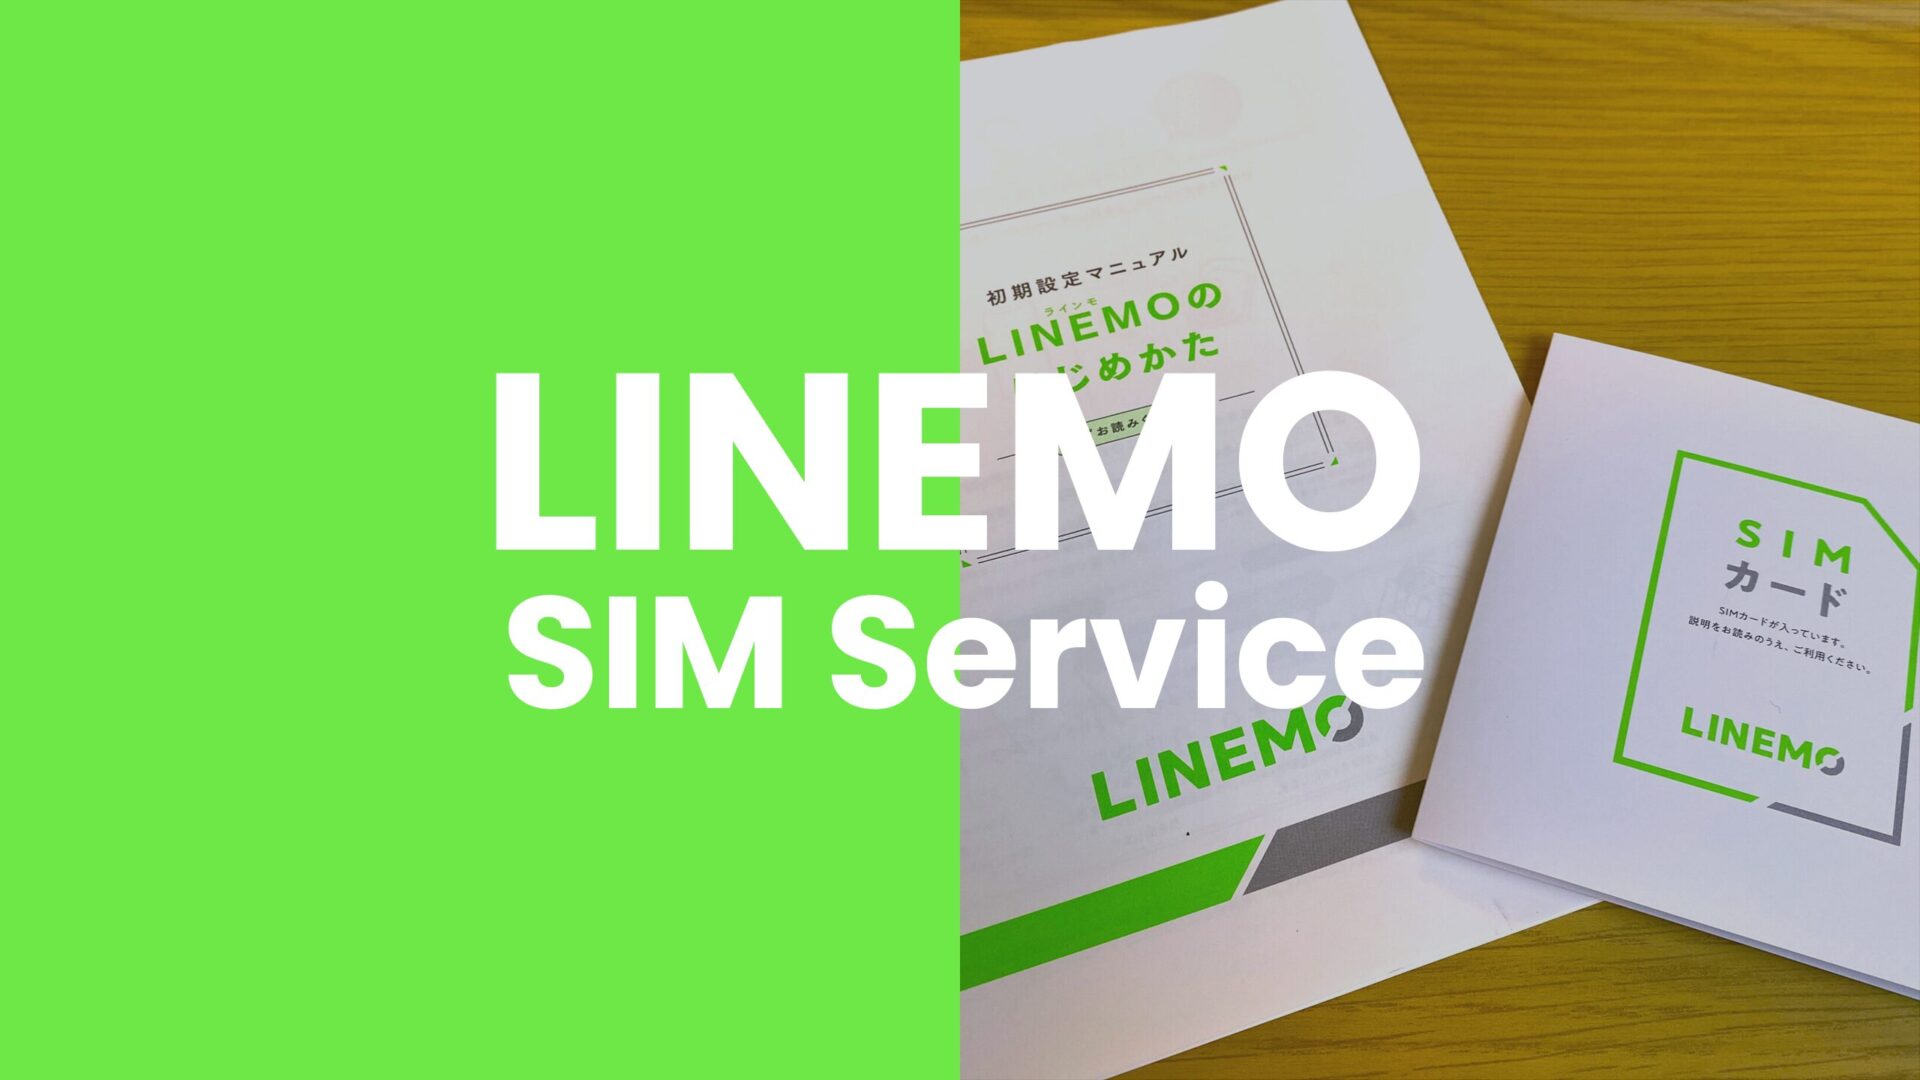 LINEMO(ラインモ)でOPPO Reno9 Aは対応機種に含まれていて使える。のサムネイル画像